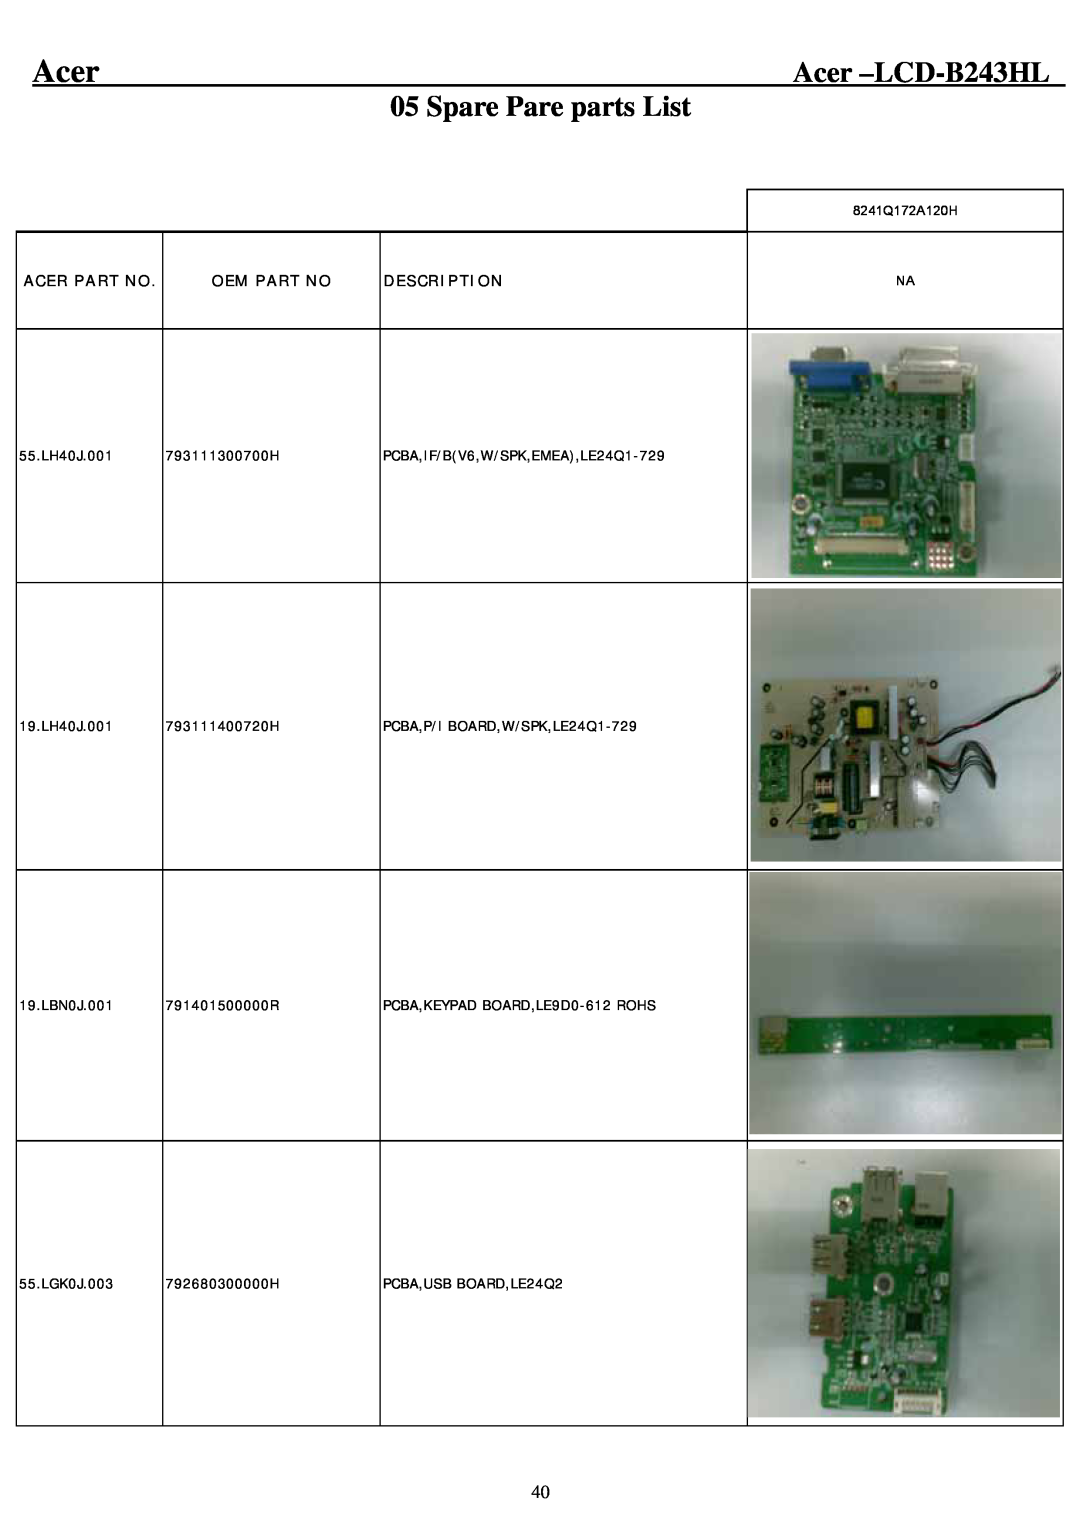 Acer service manual Spare Pare parts List, Acer -LCD-B243HL, Acer Part No, Oem Part No, Description 